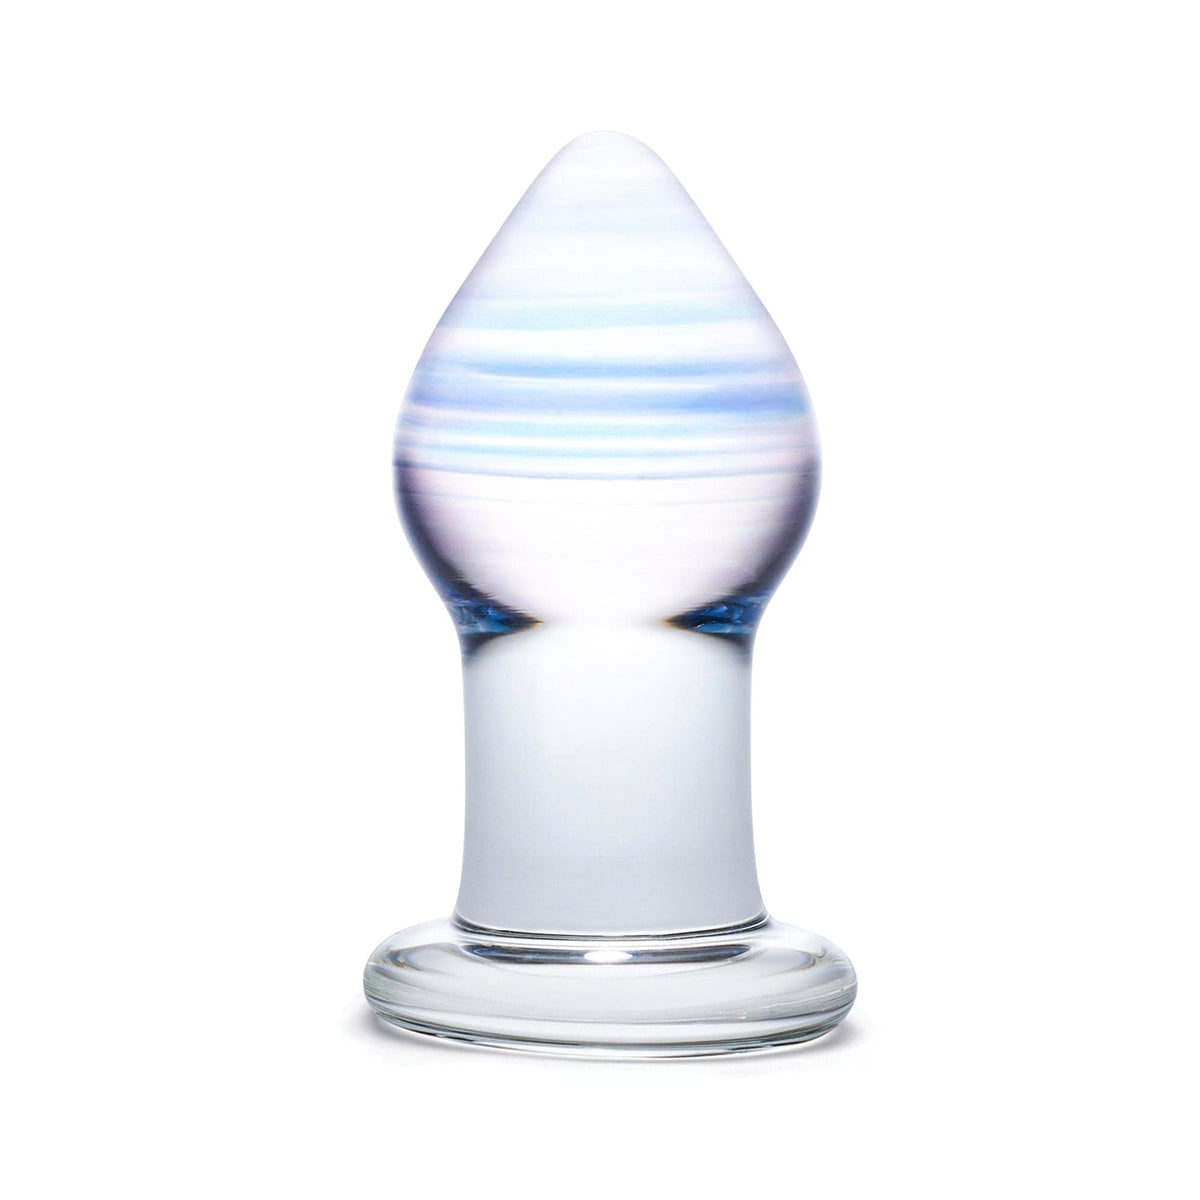 Glas - Amethyst Rain Glass Butt Plug 3.25&quot; (Clear) GL1001 CherryAffairs